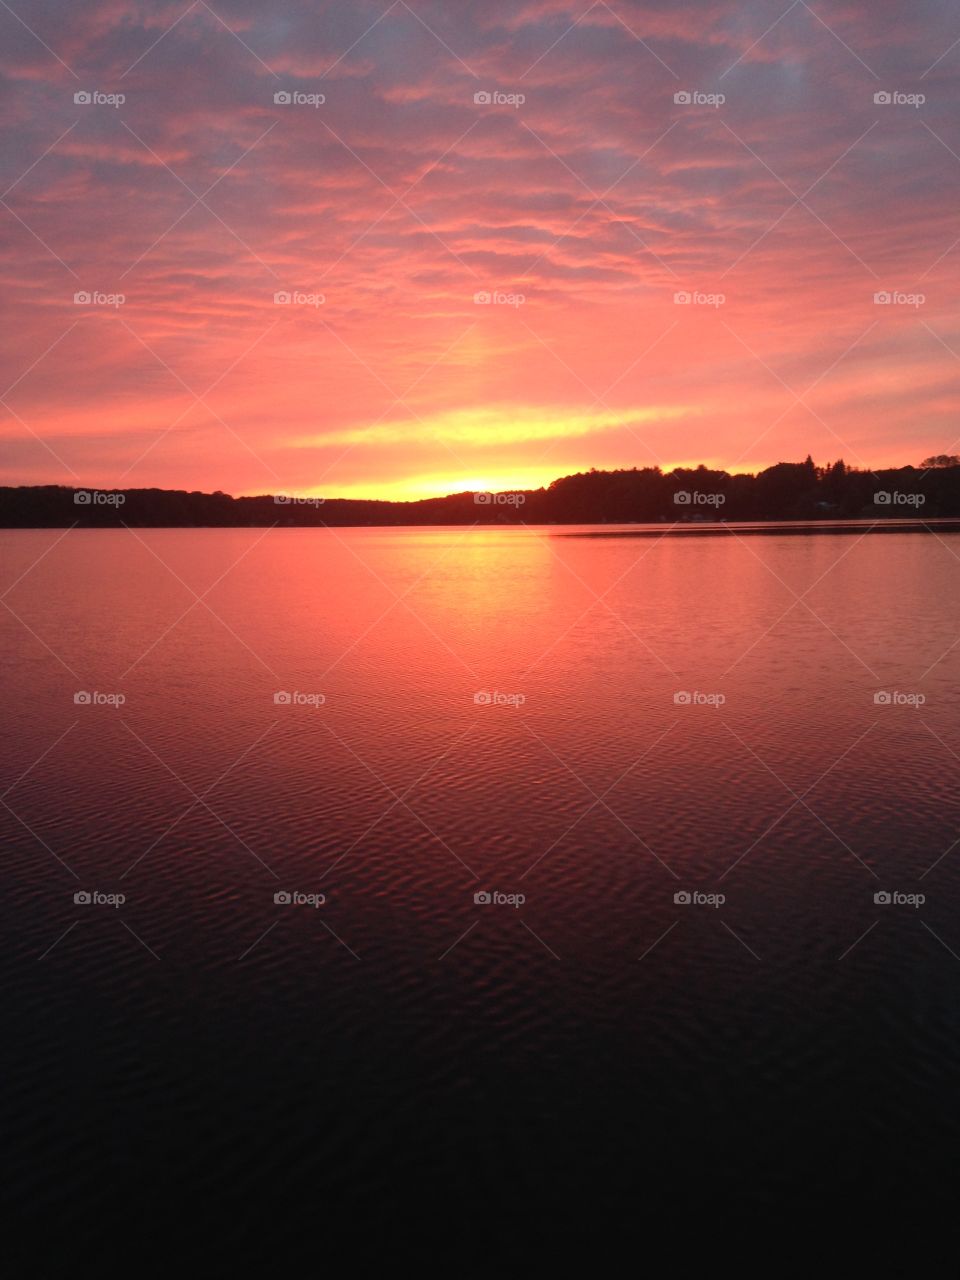 Sunset on lake Ann 